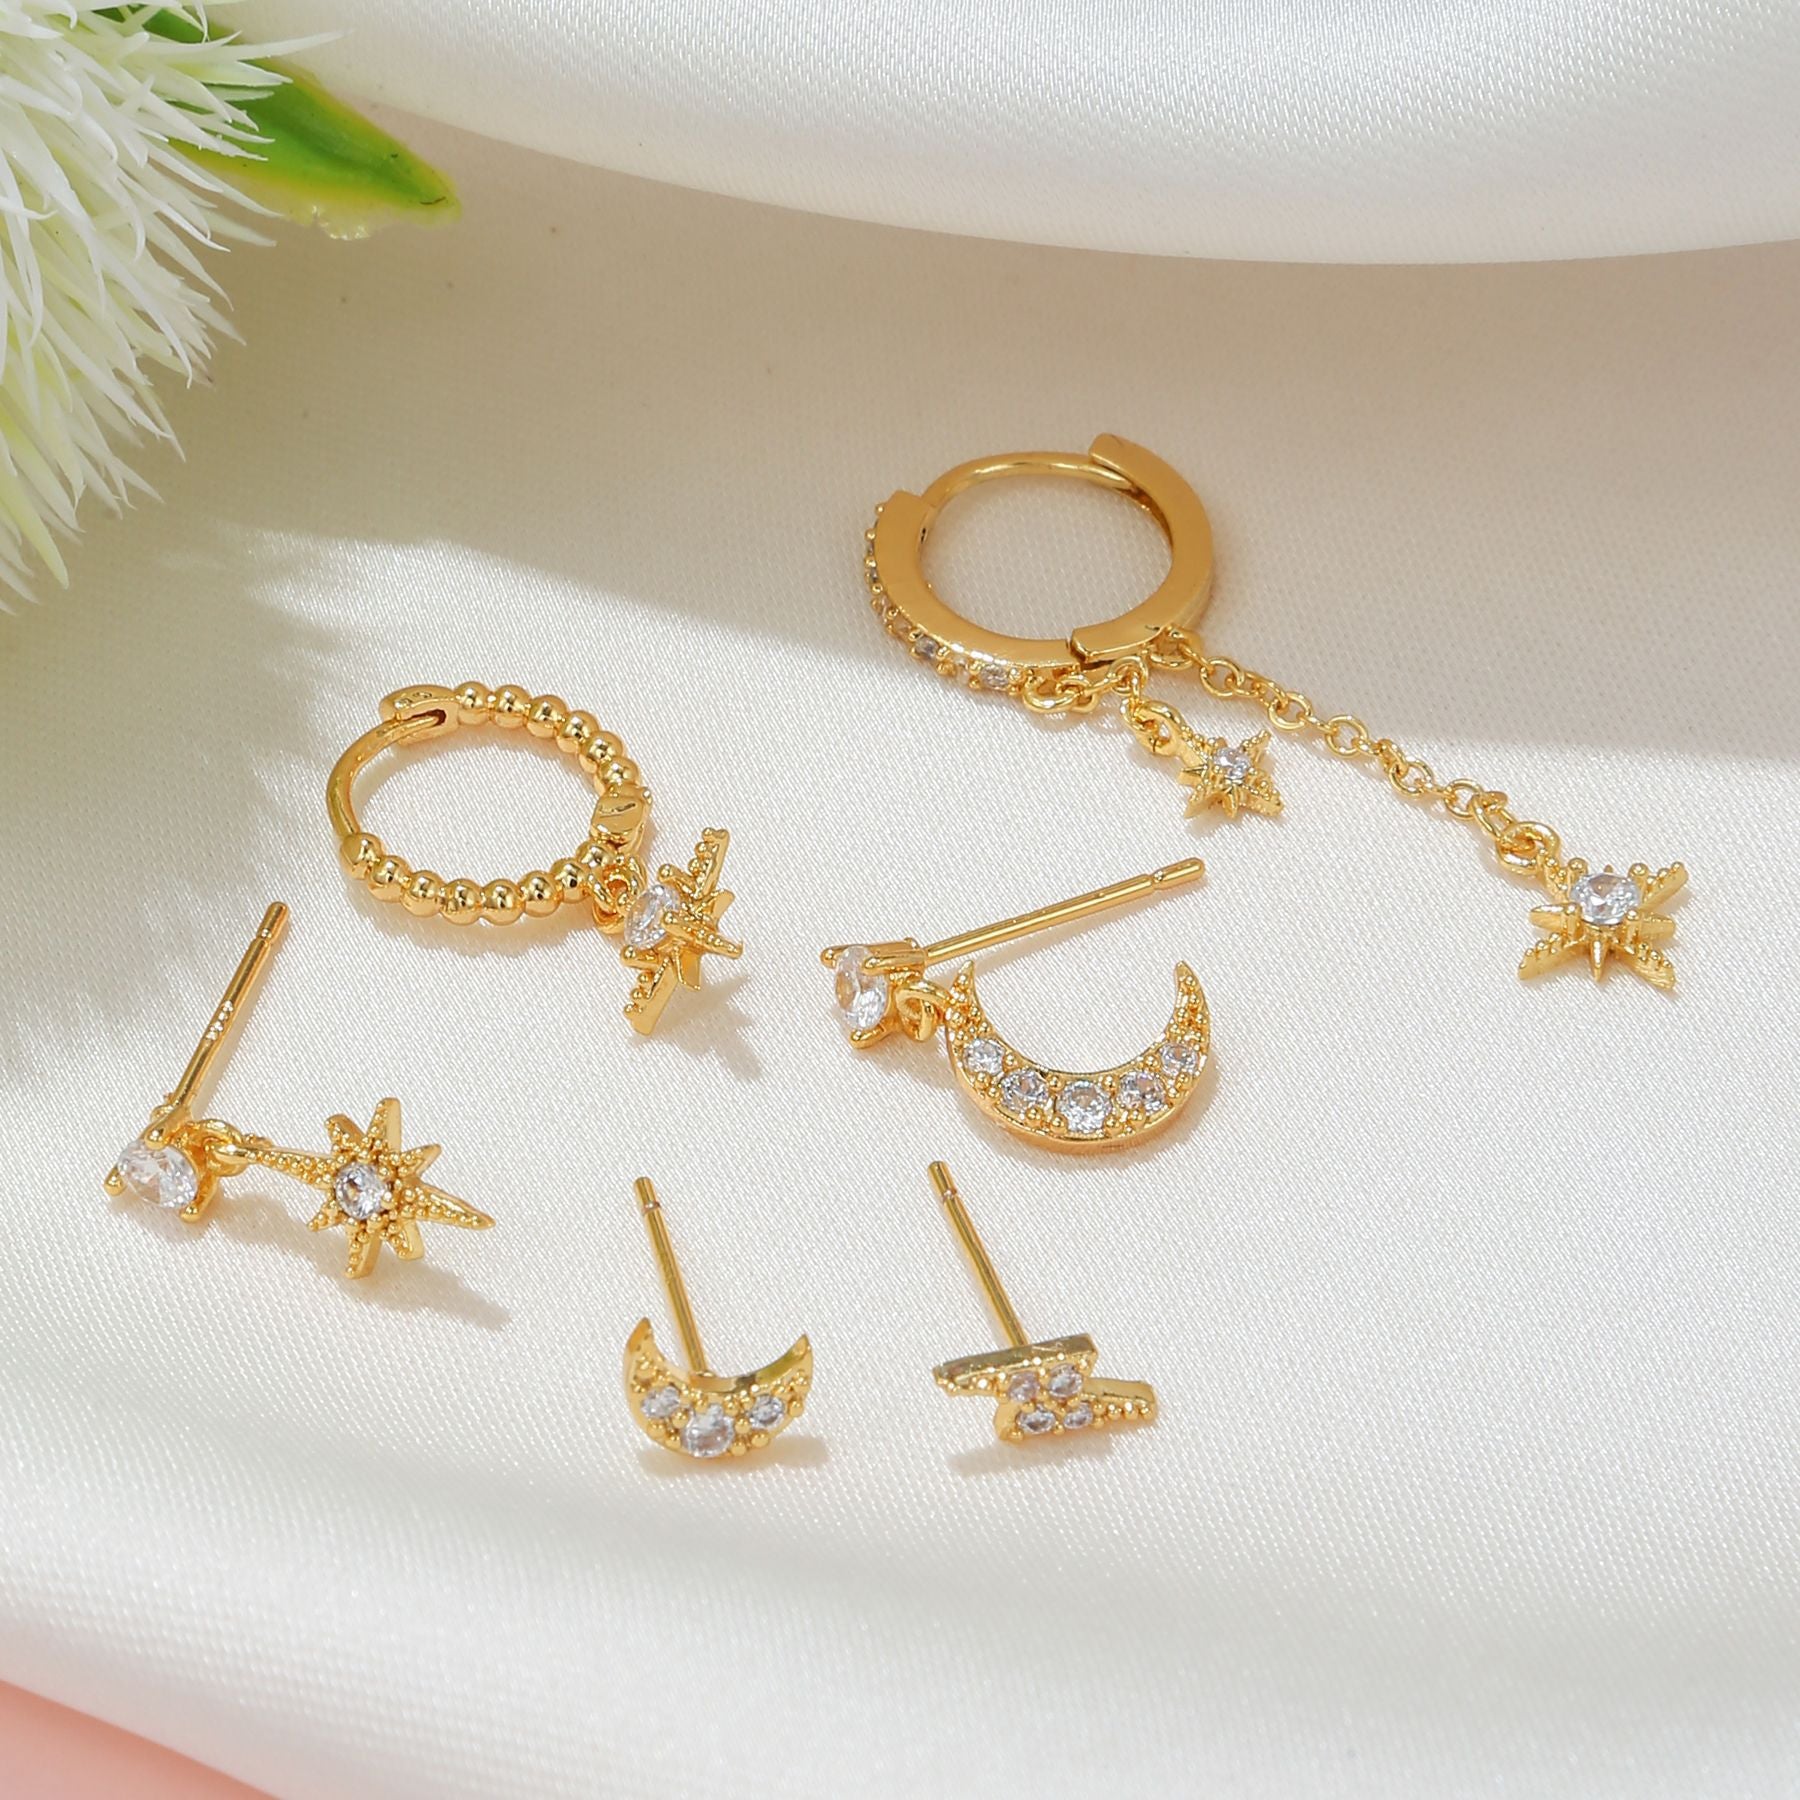 Six-piece Star Moon Earrings